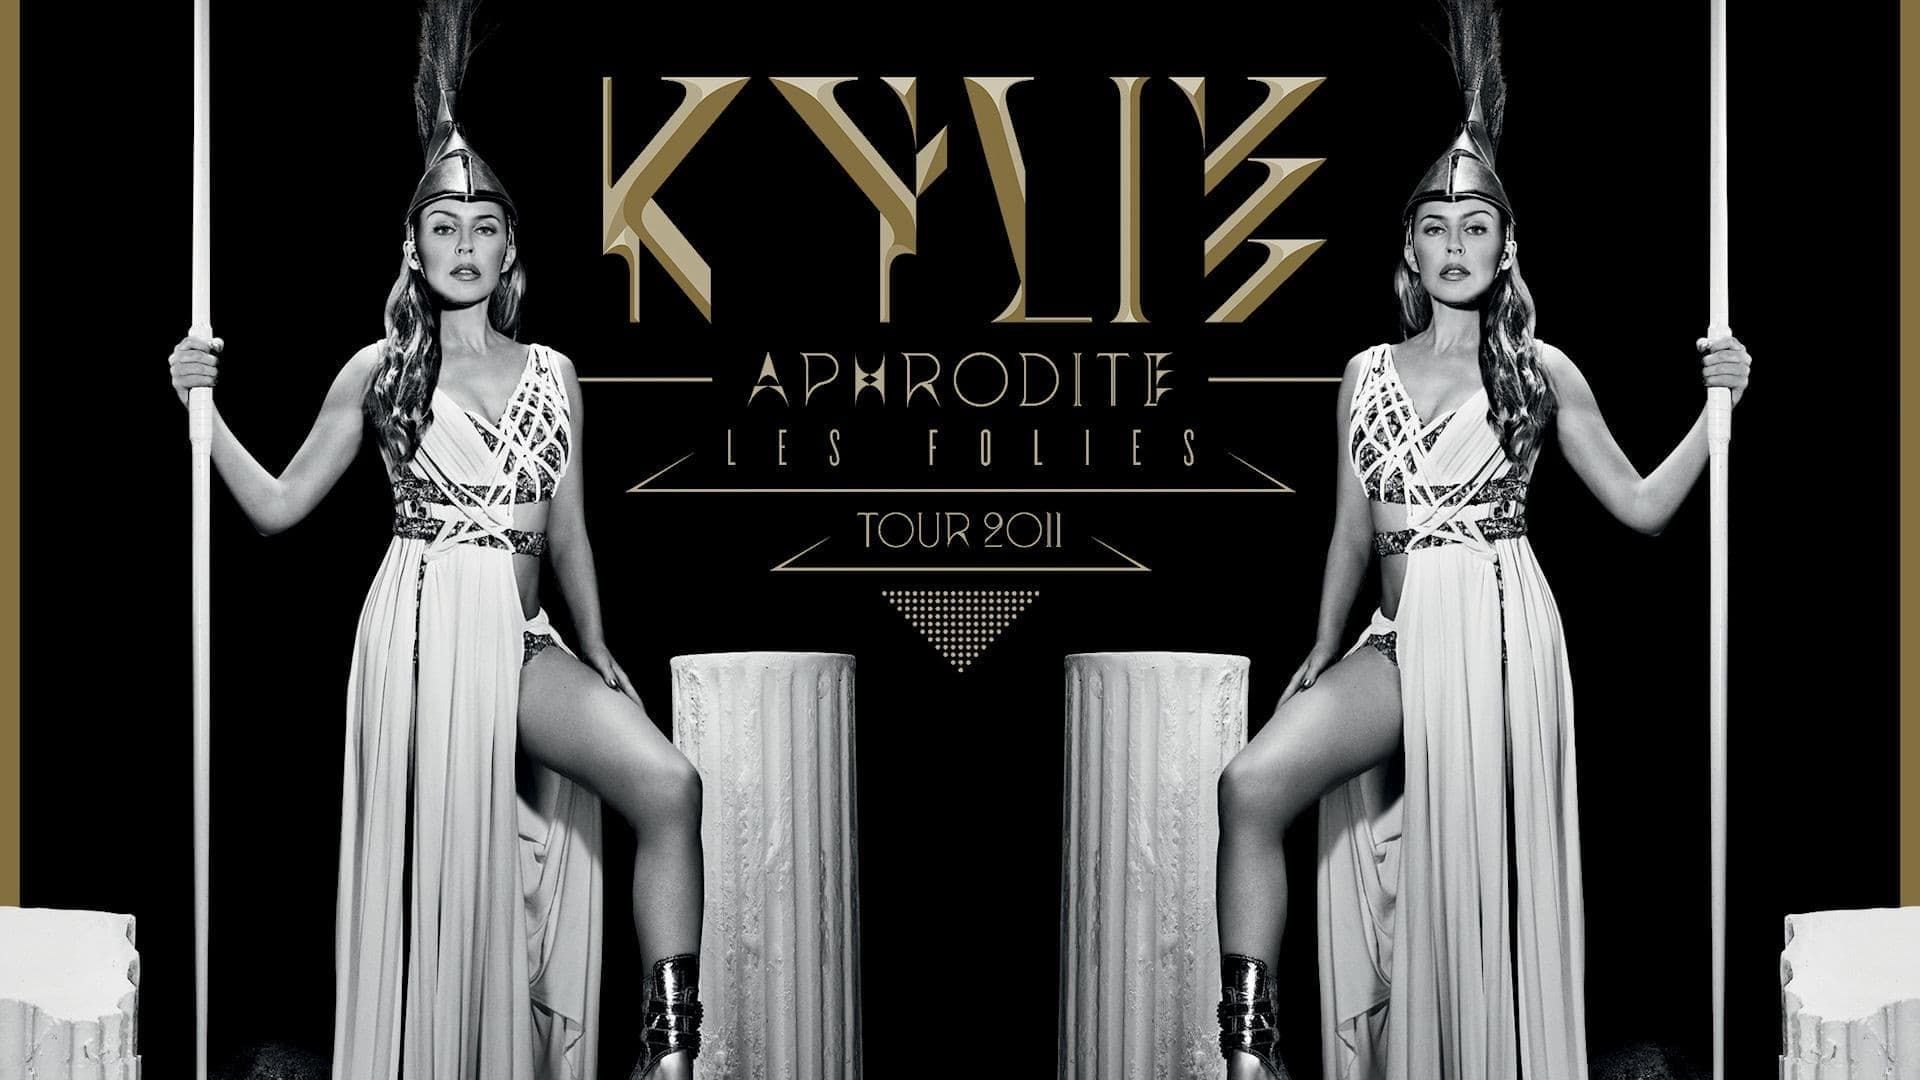 Kylie - Aphrodite: Les Folies Tour 2011 background